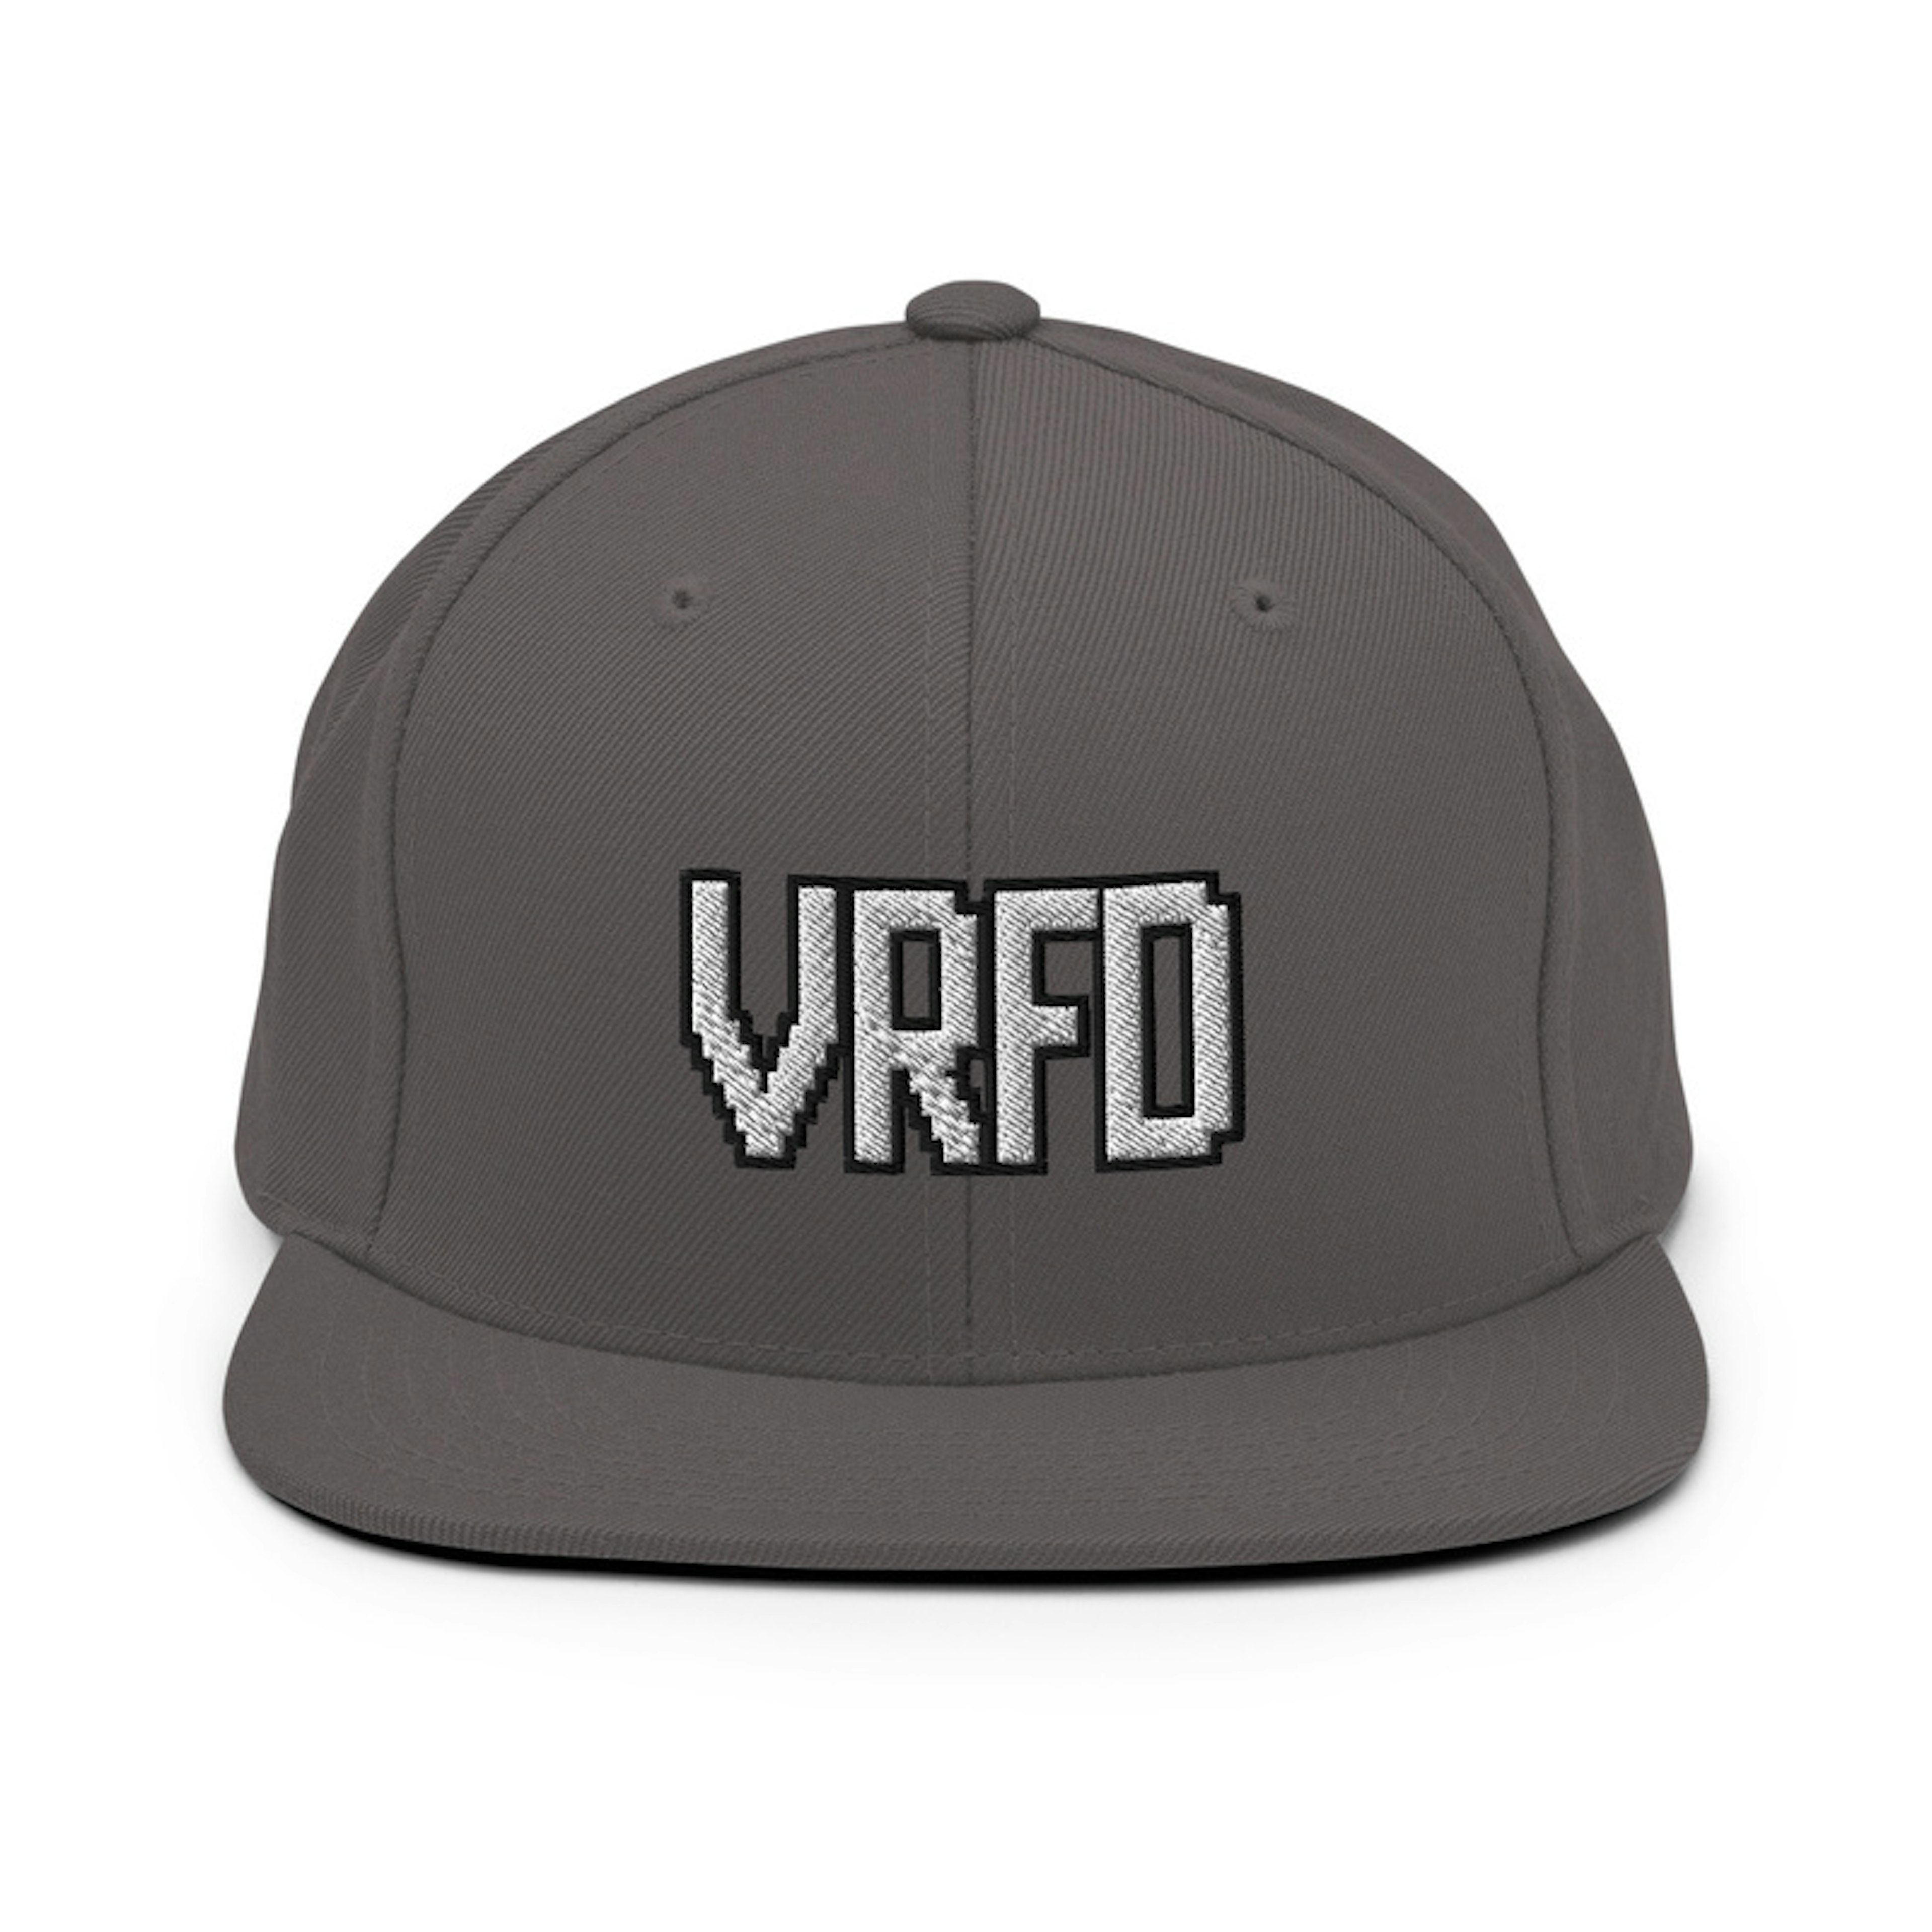 Flat VRFD hat